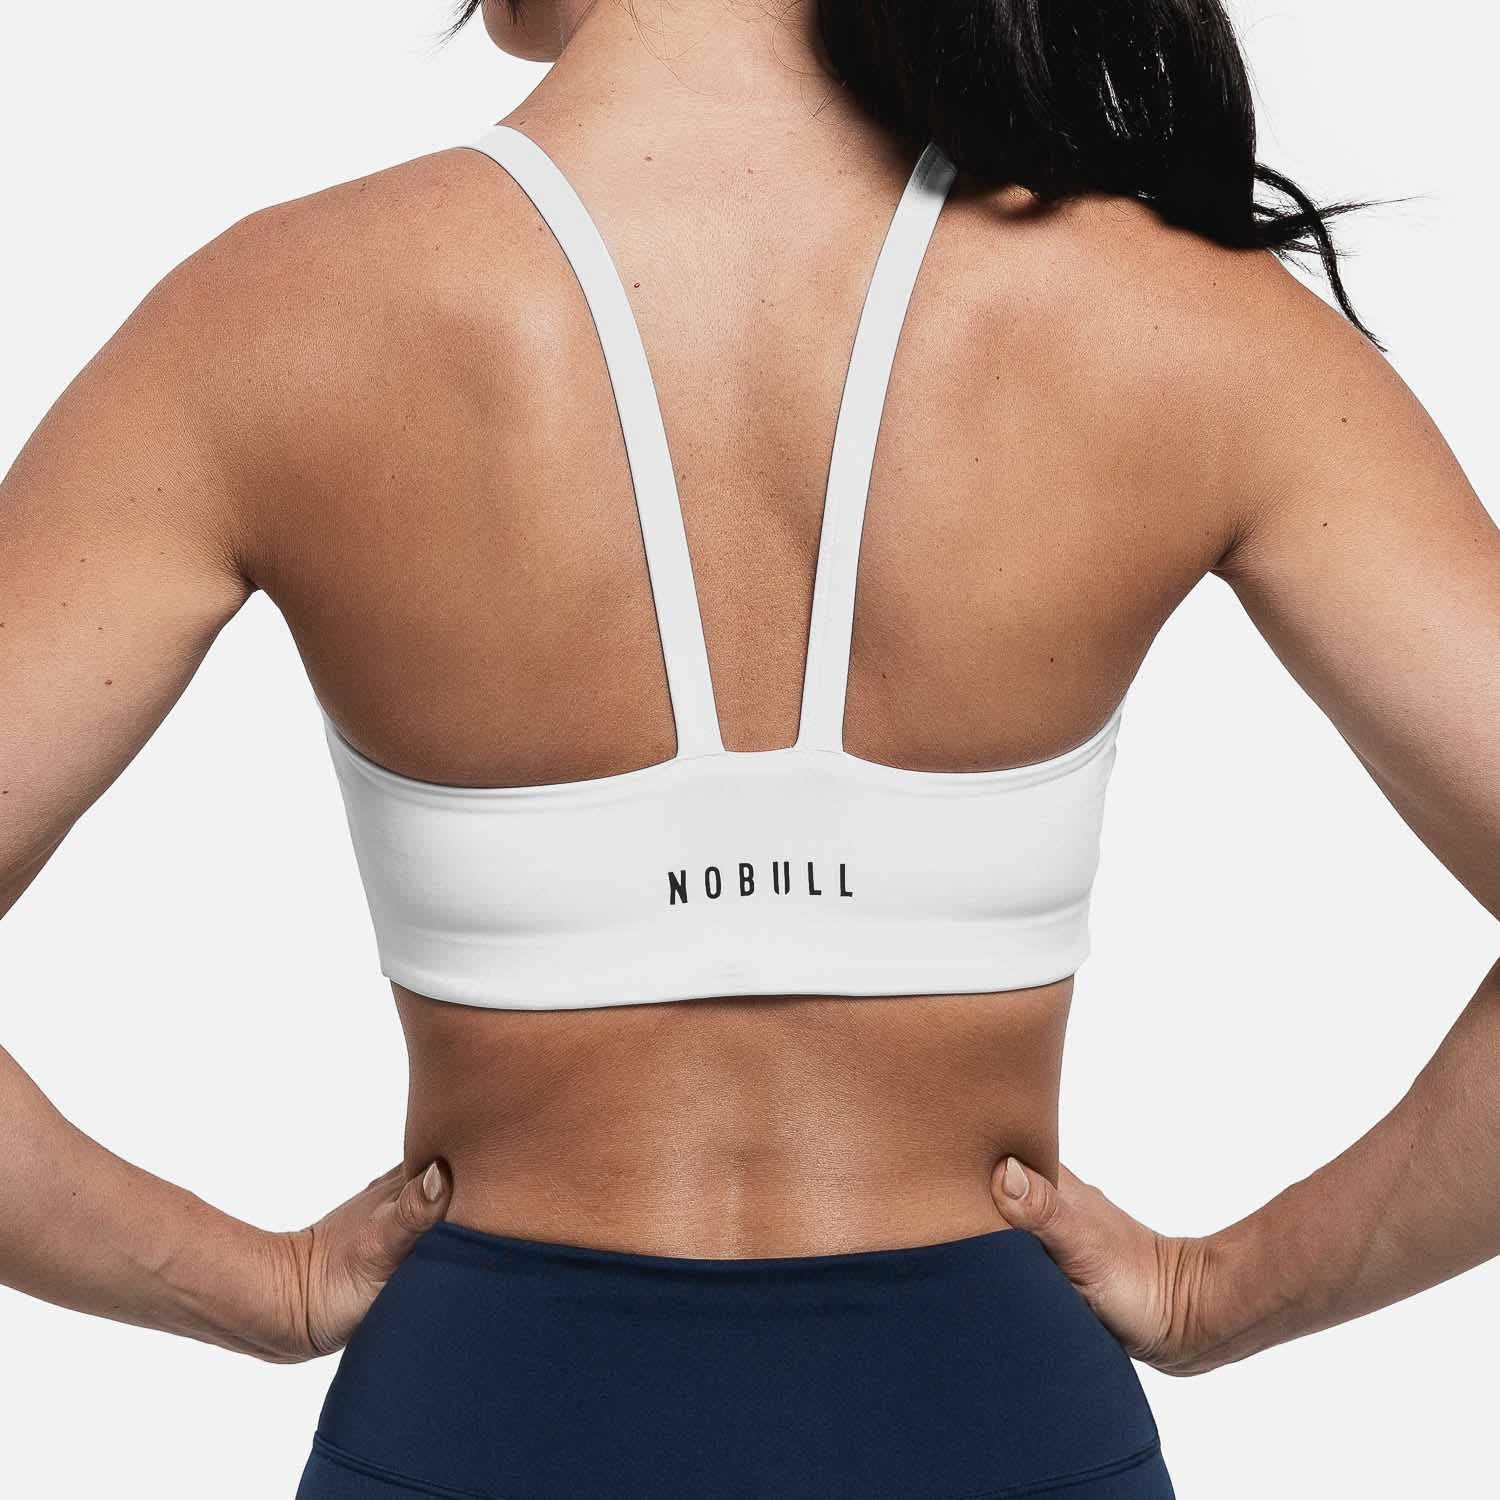 NOBULL Spandex Blend Sports Bras for Women